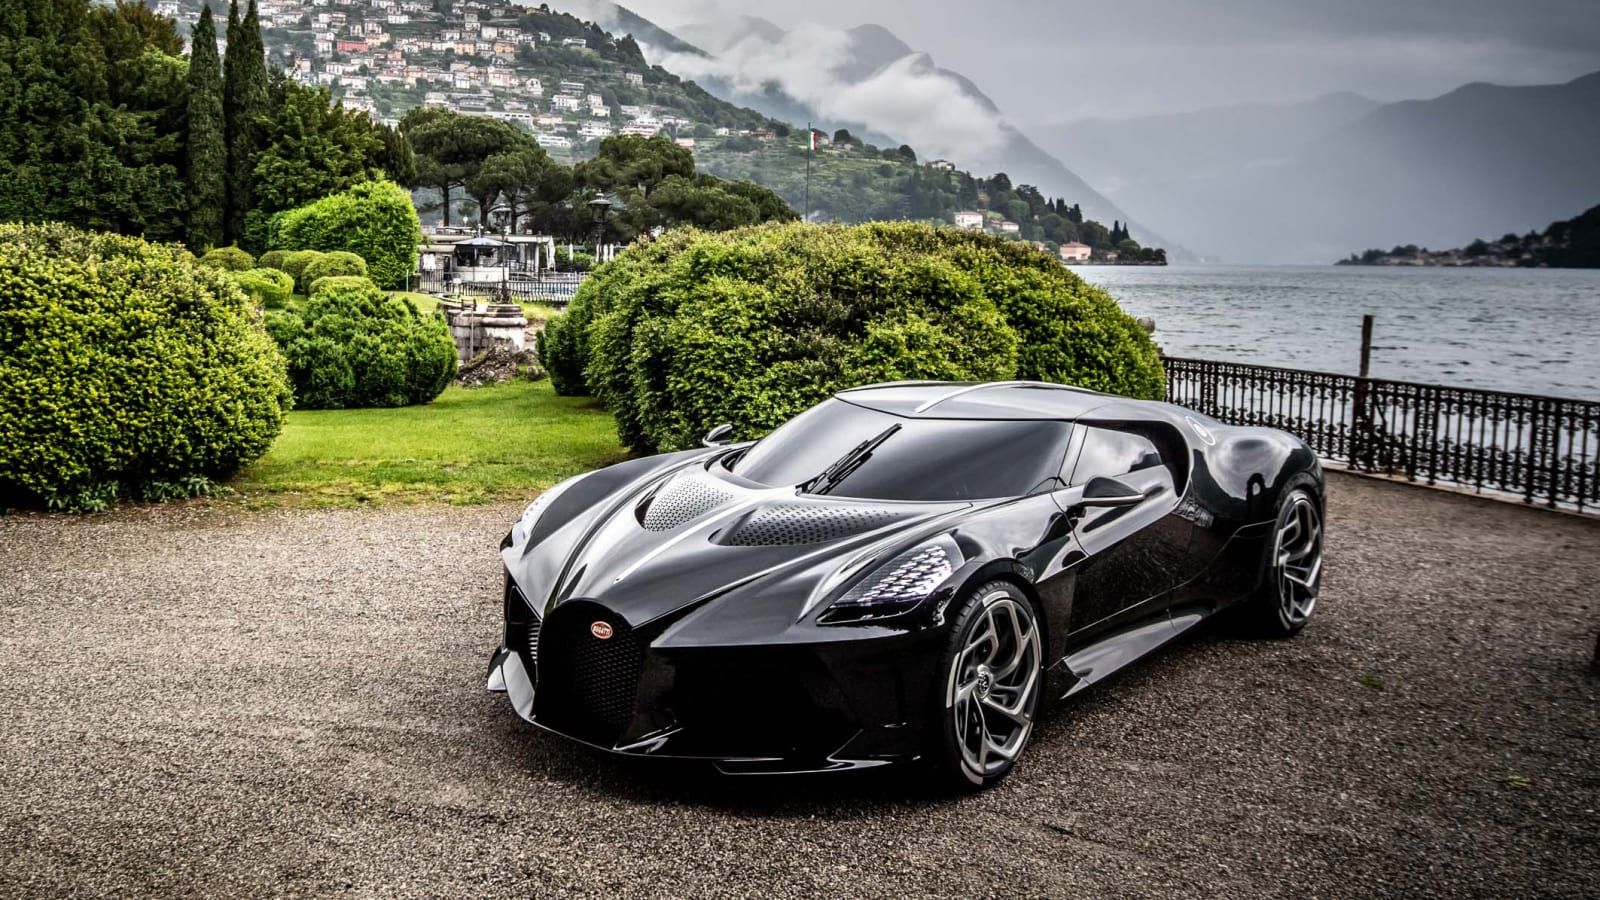 Bugatti La Voiture Noire parked outside